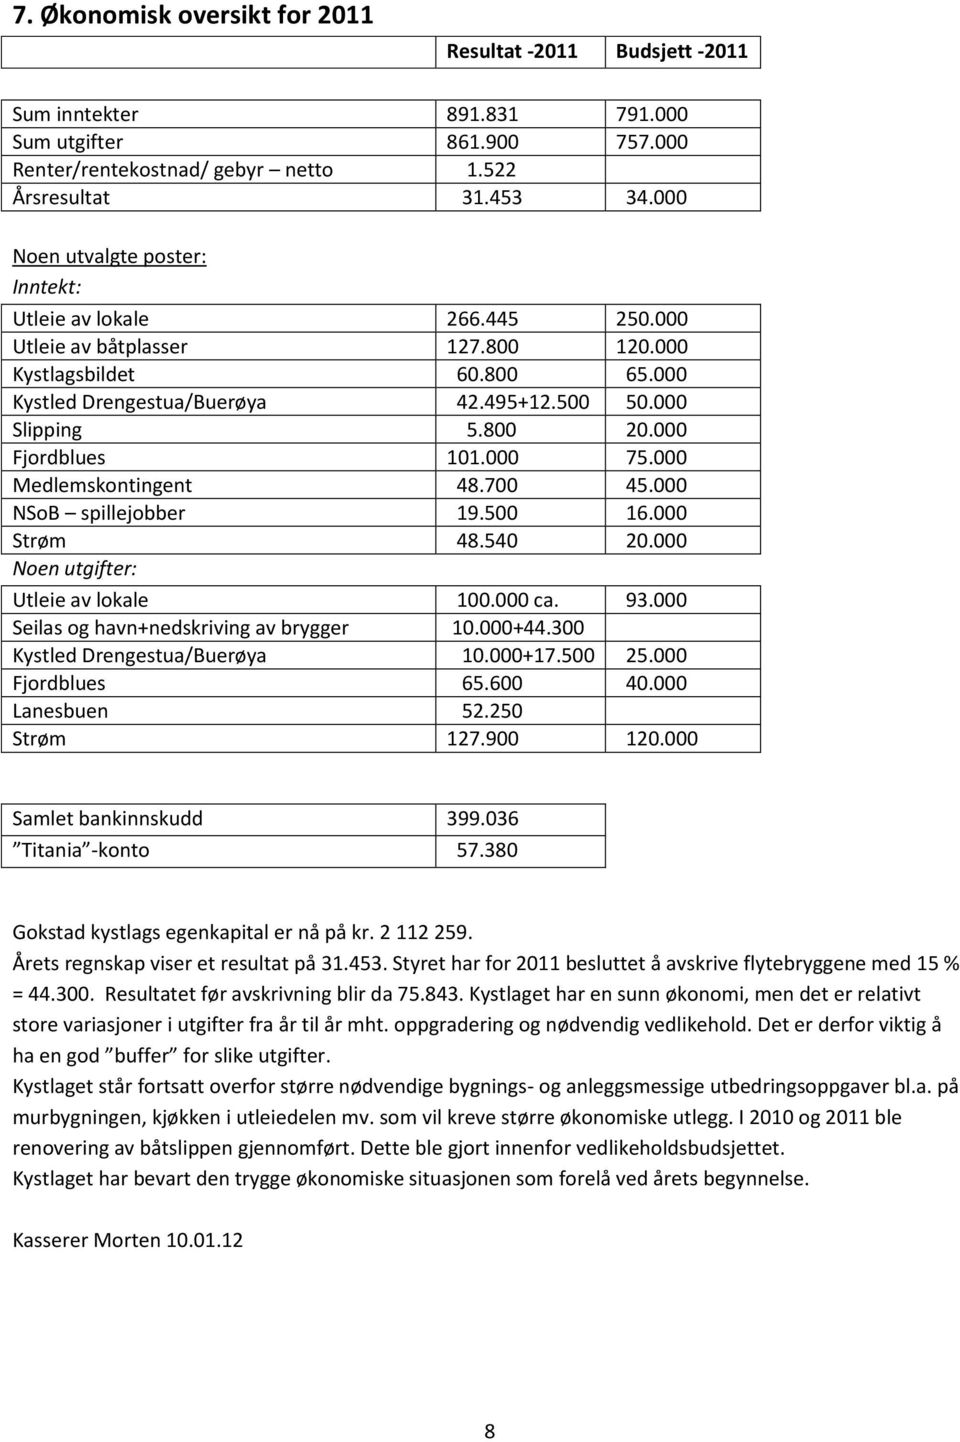 000 Fjordblues 101.000 75.000 Medlemskontingent 48.700 45.000 NSoB spillejobber 19.500 16.000 Strøm 48.540 20.000 Noen utgifter: Utleie av lokale 100.000 ca. 93.